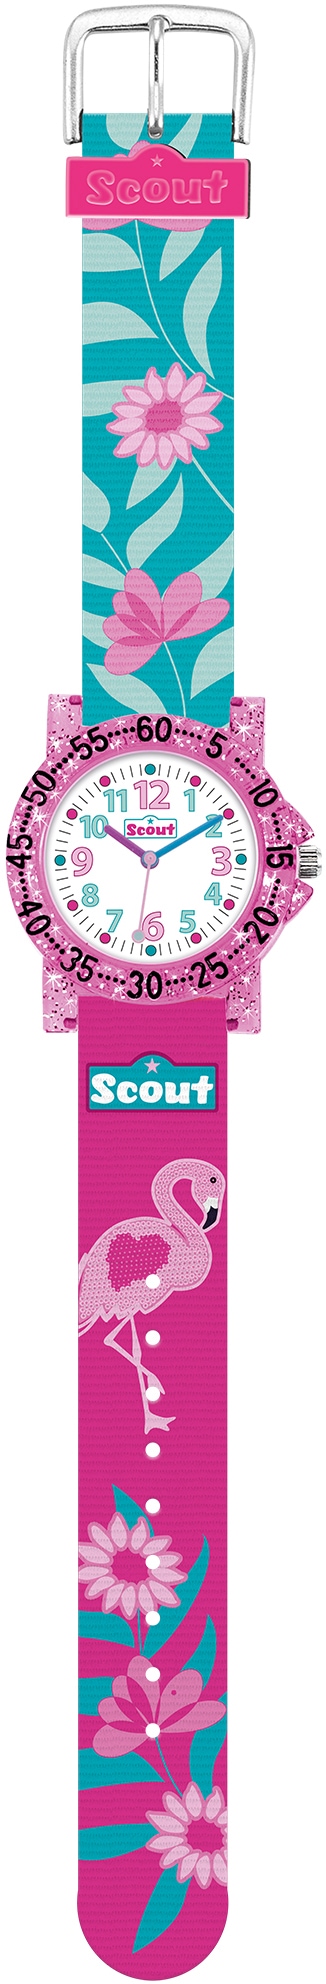 Scout Quarzuhr »The IT-Collection, 280375019«, Lernuhr, Flamingo-Blumenmotiv, Glitzer, ideal auch als Geschenk